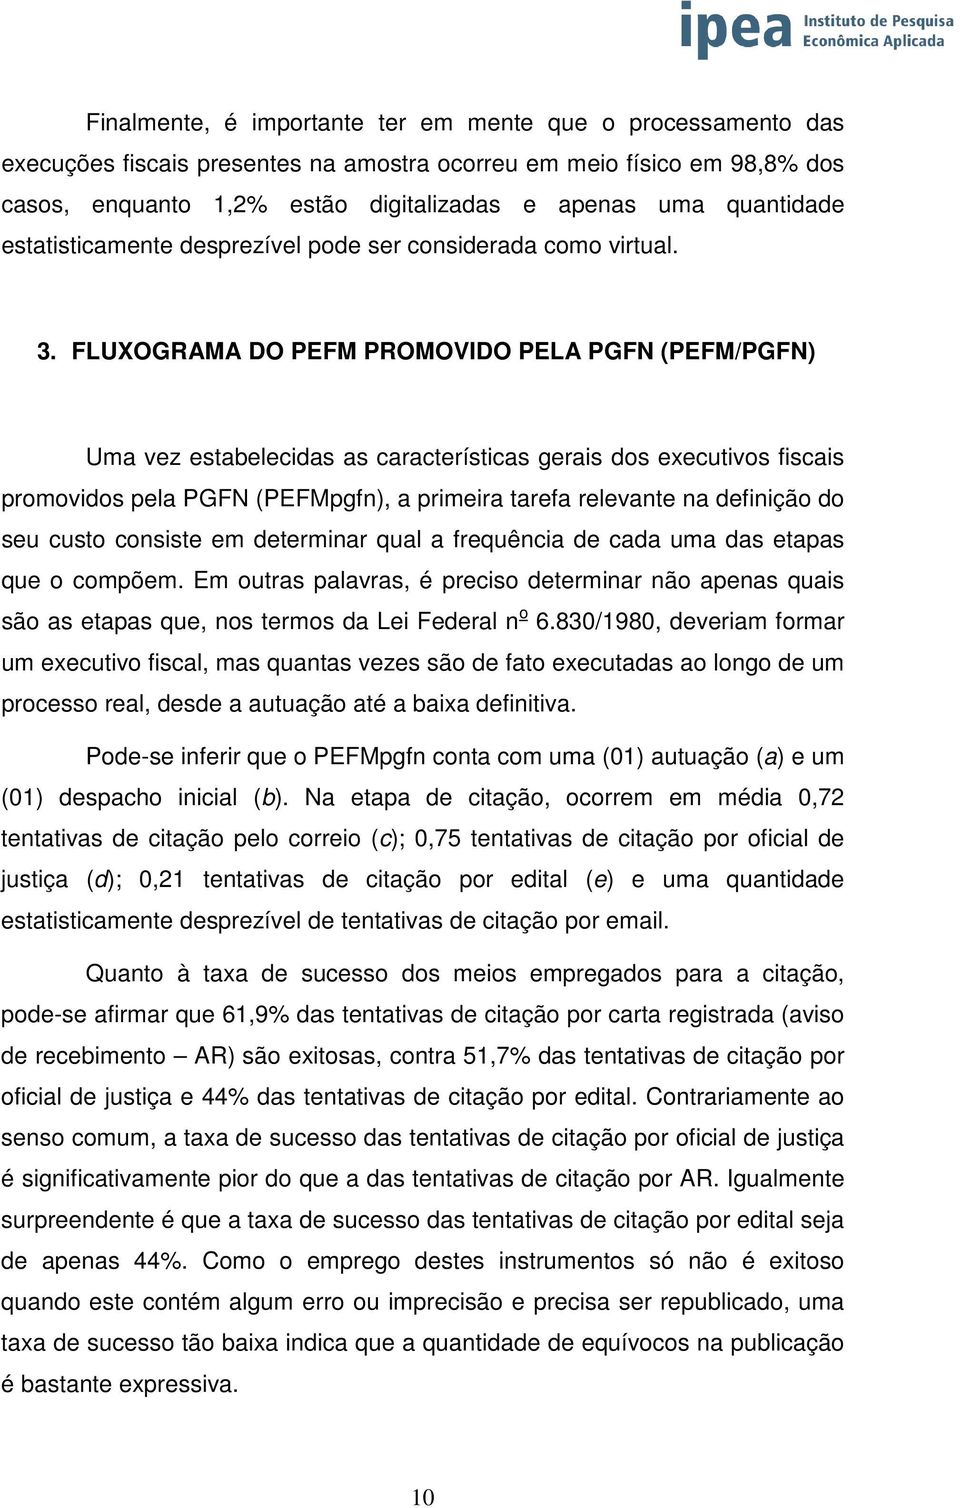 FLUXOGRAMA DO PEFM PROMOVIDO PELA PGFN (PEFM/PGFN) Uma vez estabelecidas as características gerais dos executivos fiscais promovidos pela PGFN (PEFMpgfn), a primeira tarefa relevante na definição do